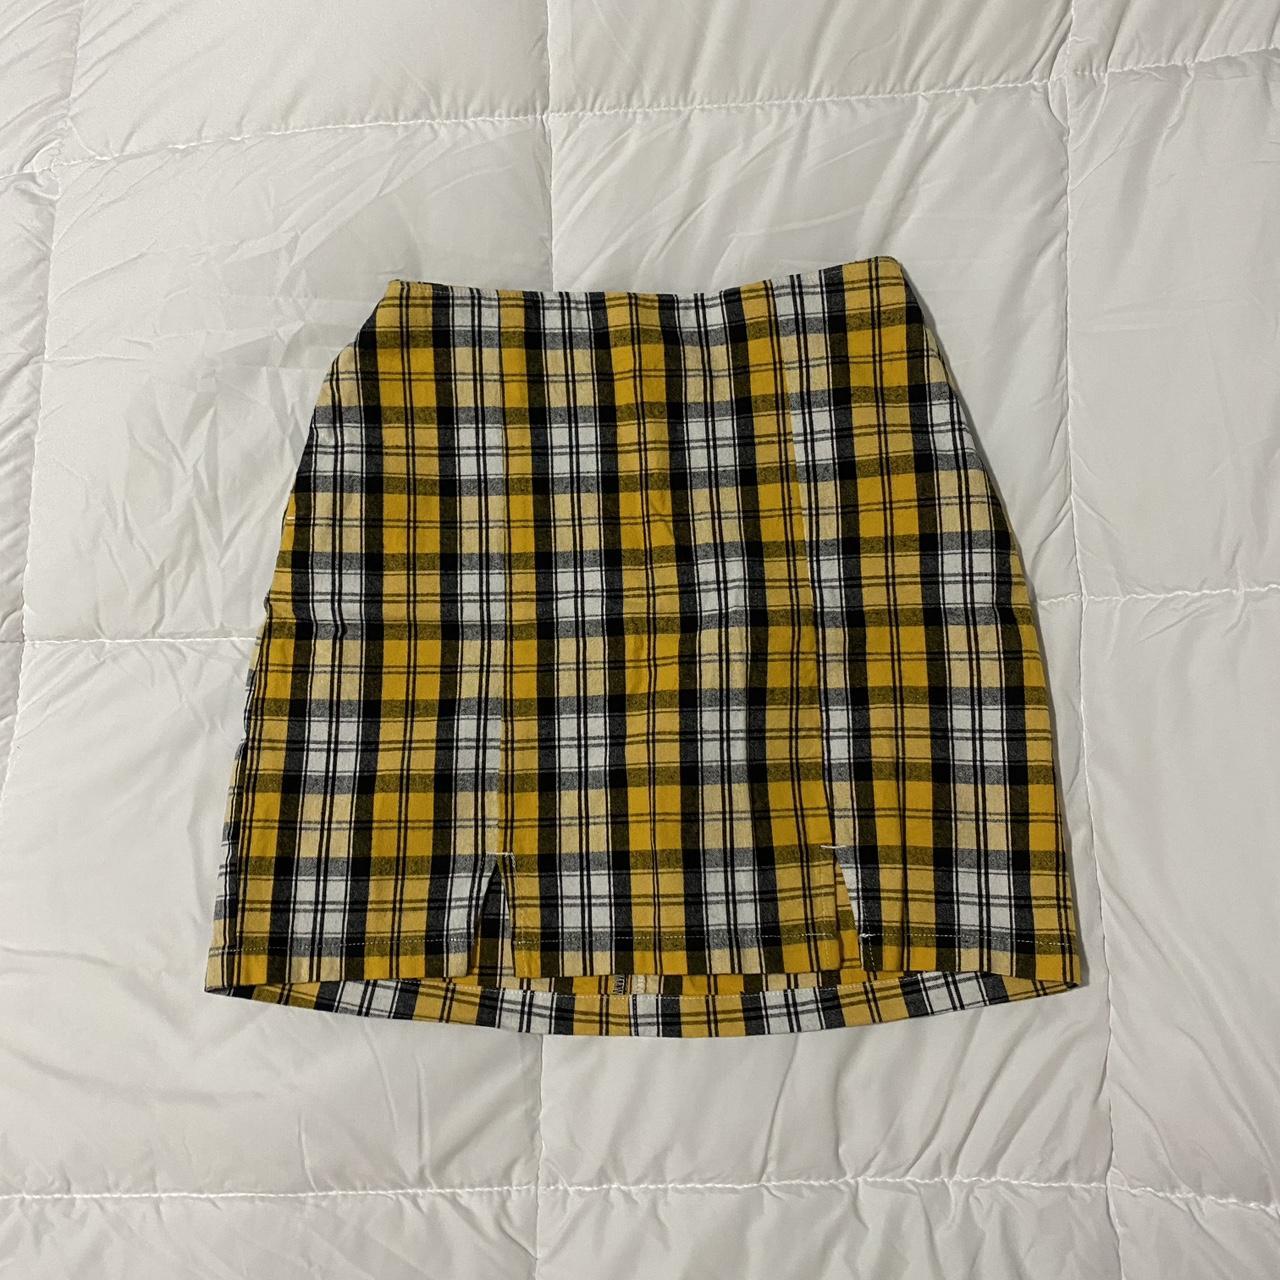 hollister ultra high rise plaid skirt size:... - Depop